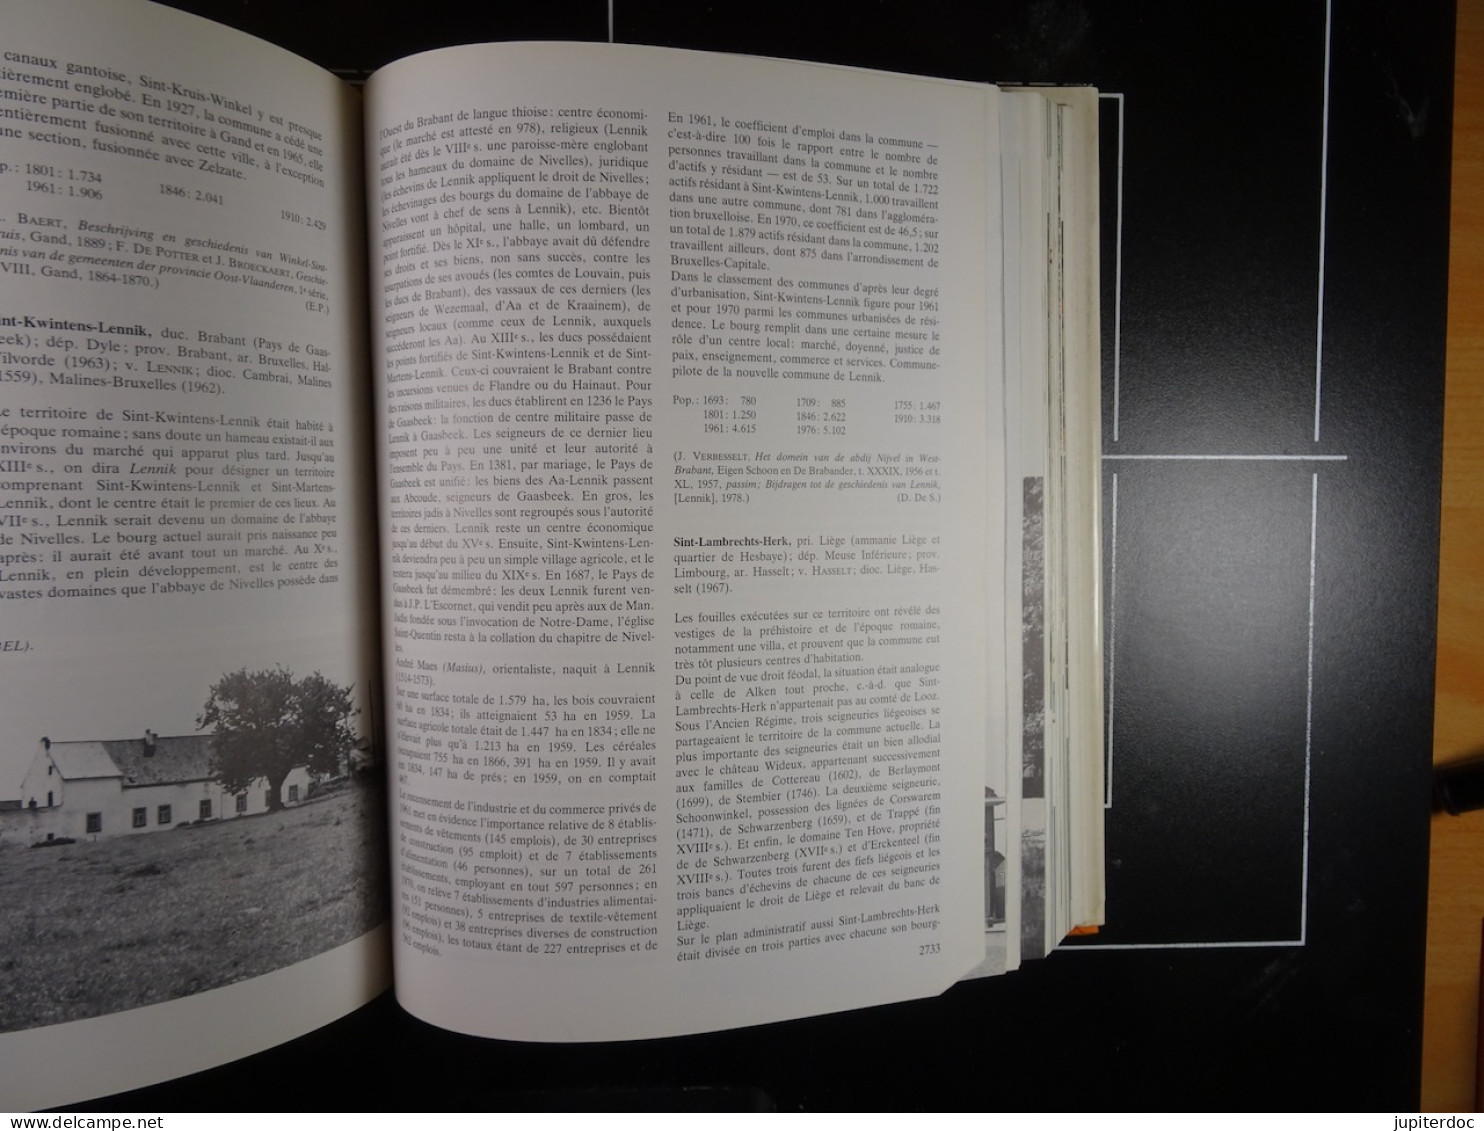 Dictionnaire des Communes de Belgique d'histoire et de géographie administrative Hasquin, Van Uyten et Duvosquel 1980